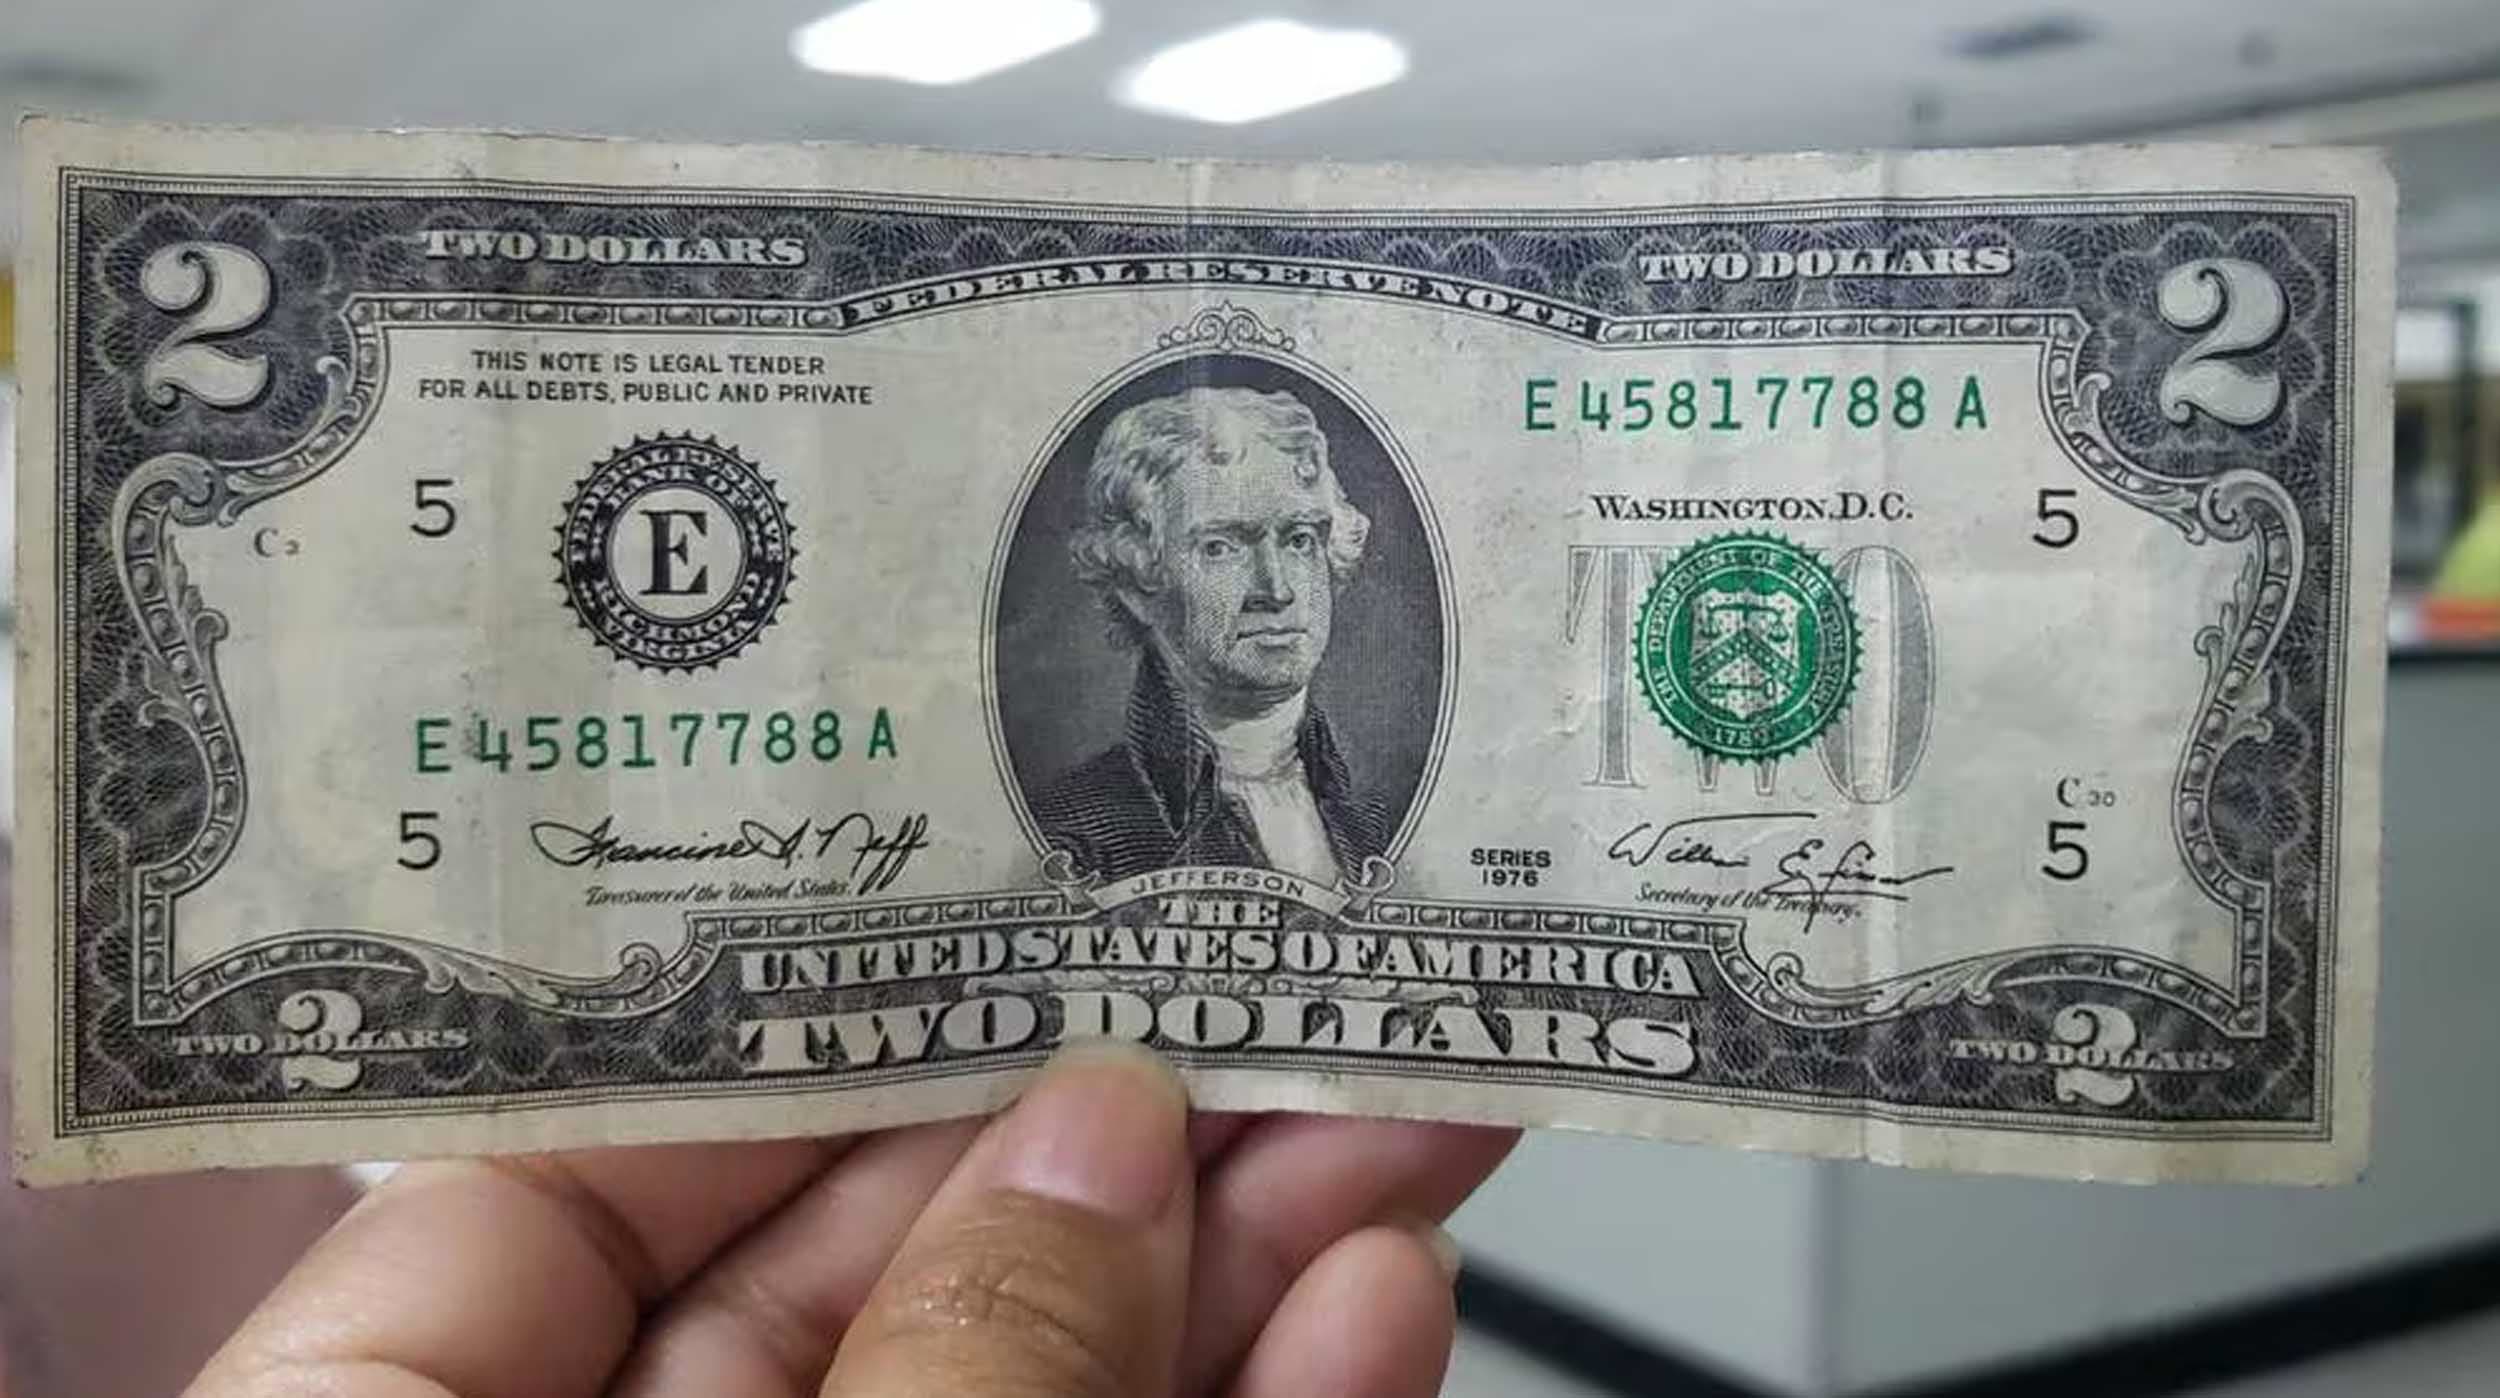 Mira el billete de 2 dólares que puede hacerte rico